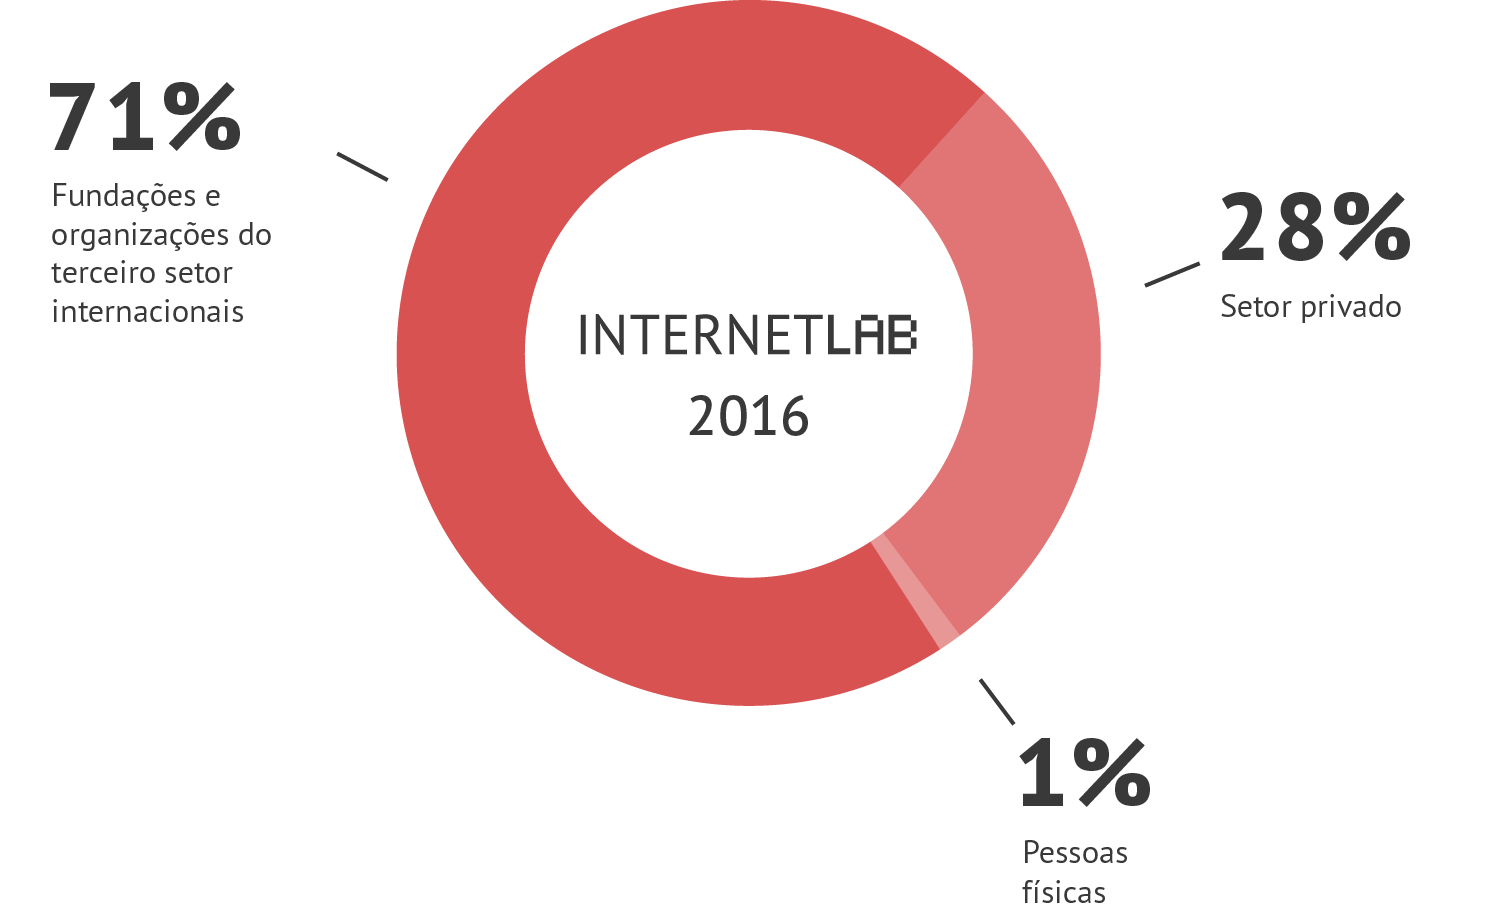 Gráfico em pizza com as informações de fontes de financiamento do InternetLab em 2016. Sendo 71% vindo de fundações e organizações do terceiro setor internacionais, 28% do setor privado e 1% de pessoas físicas.